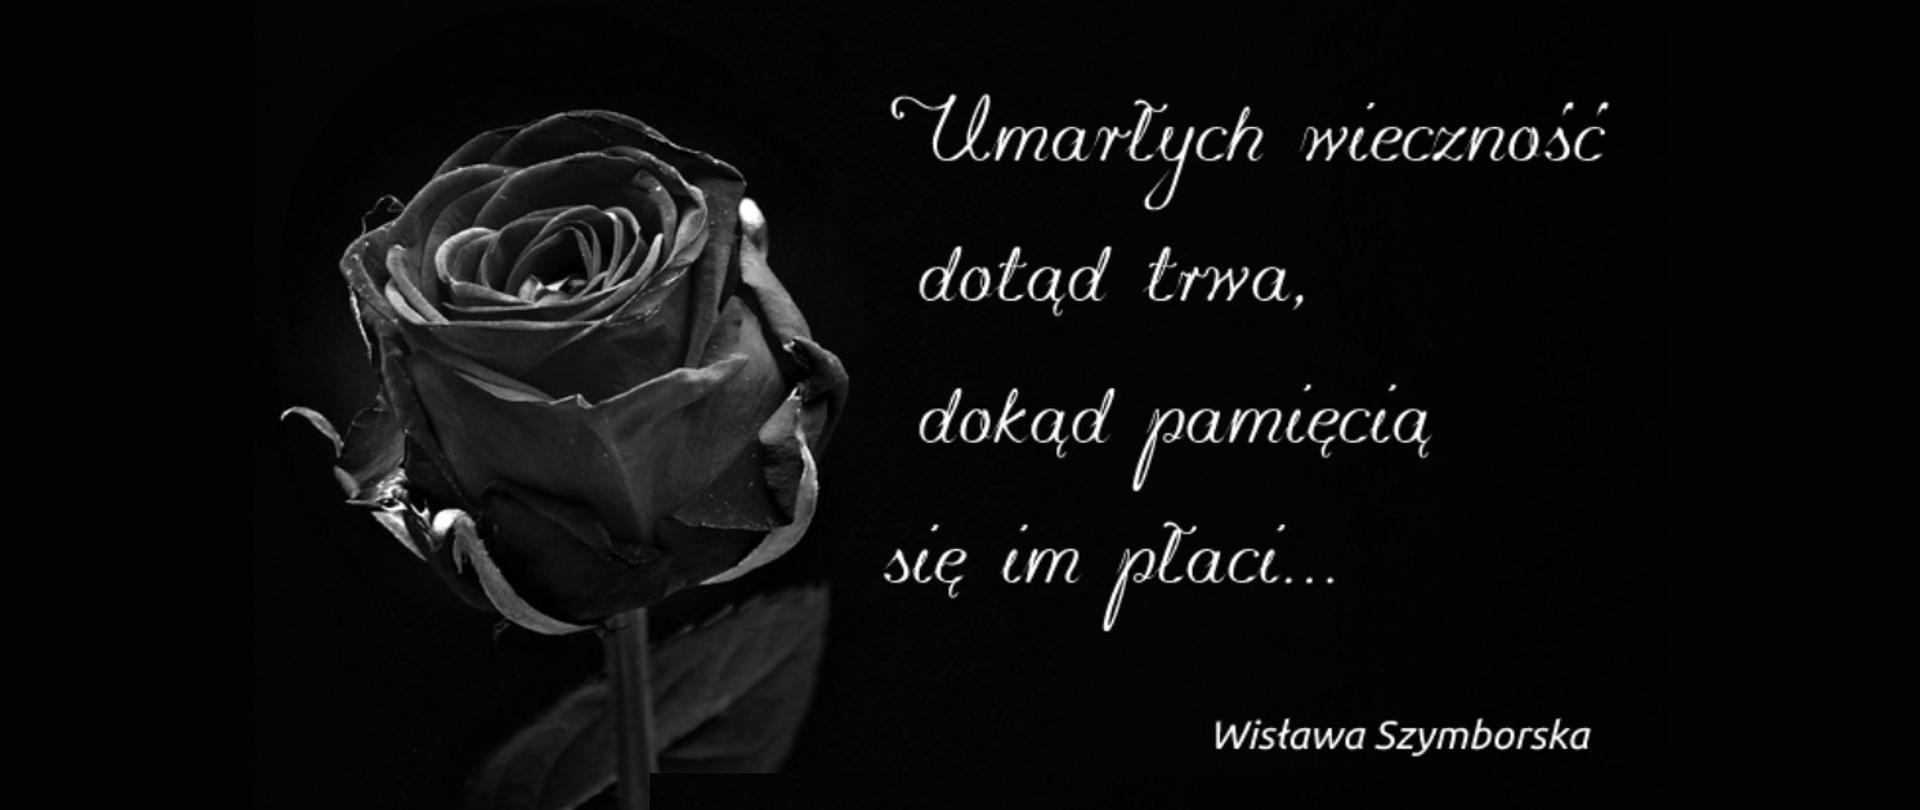 Czarna róża na czarnym tle z sentencją Wisławy Szymborkiej zapisaną białą ozdobną czcionką "Umarłych wieczność dotąd trwa, dokąd pamięcią się im płaci".